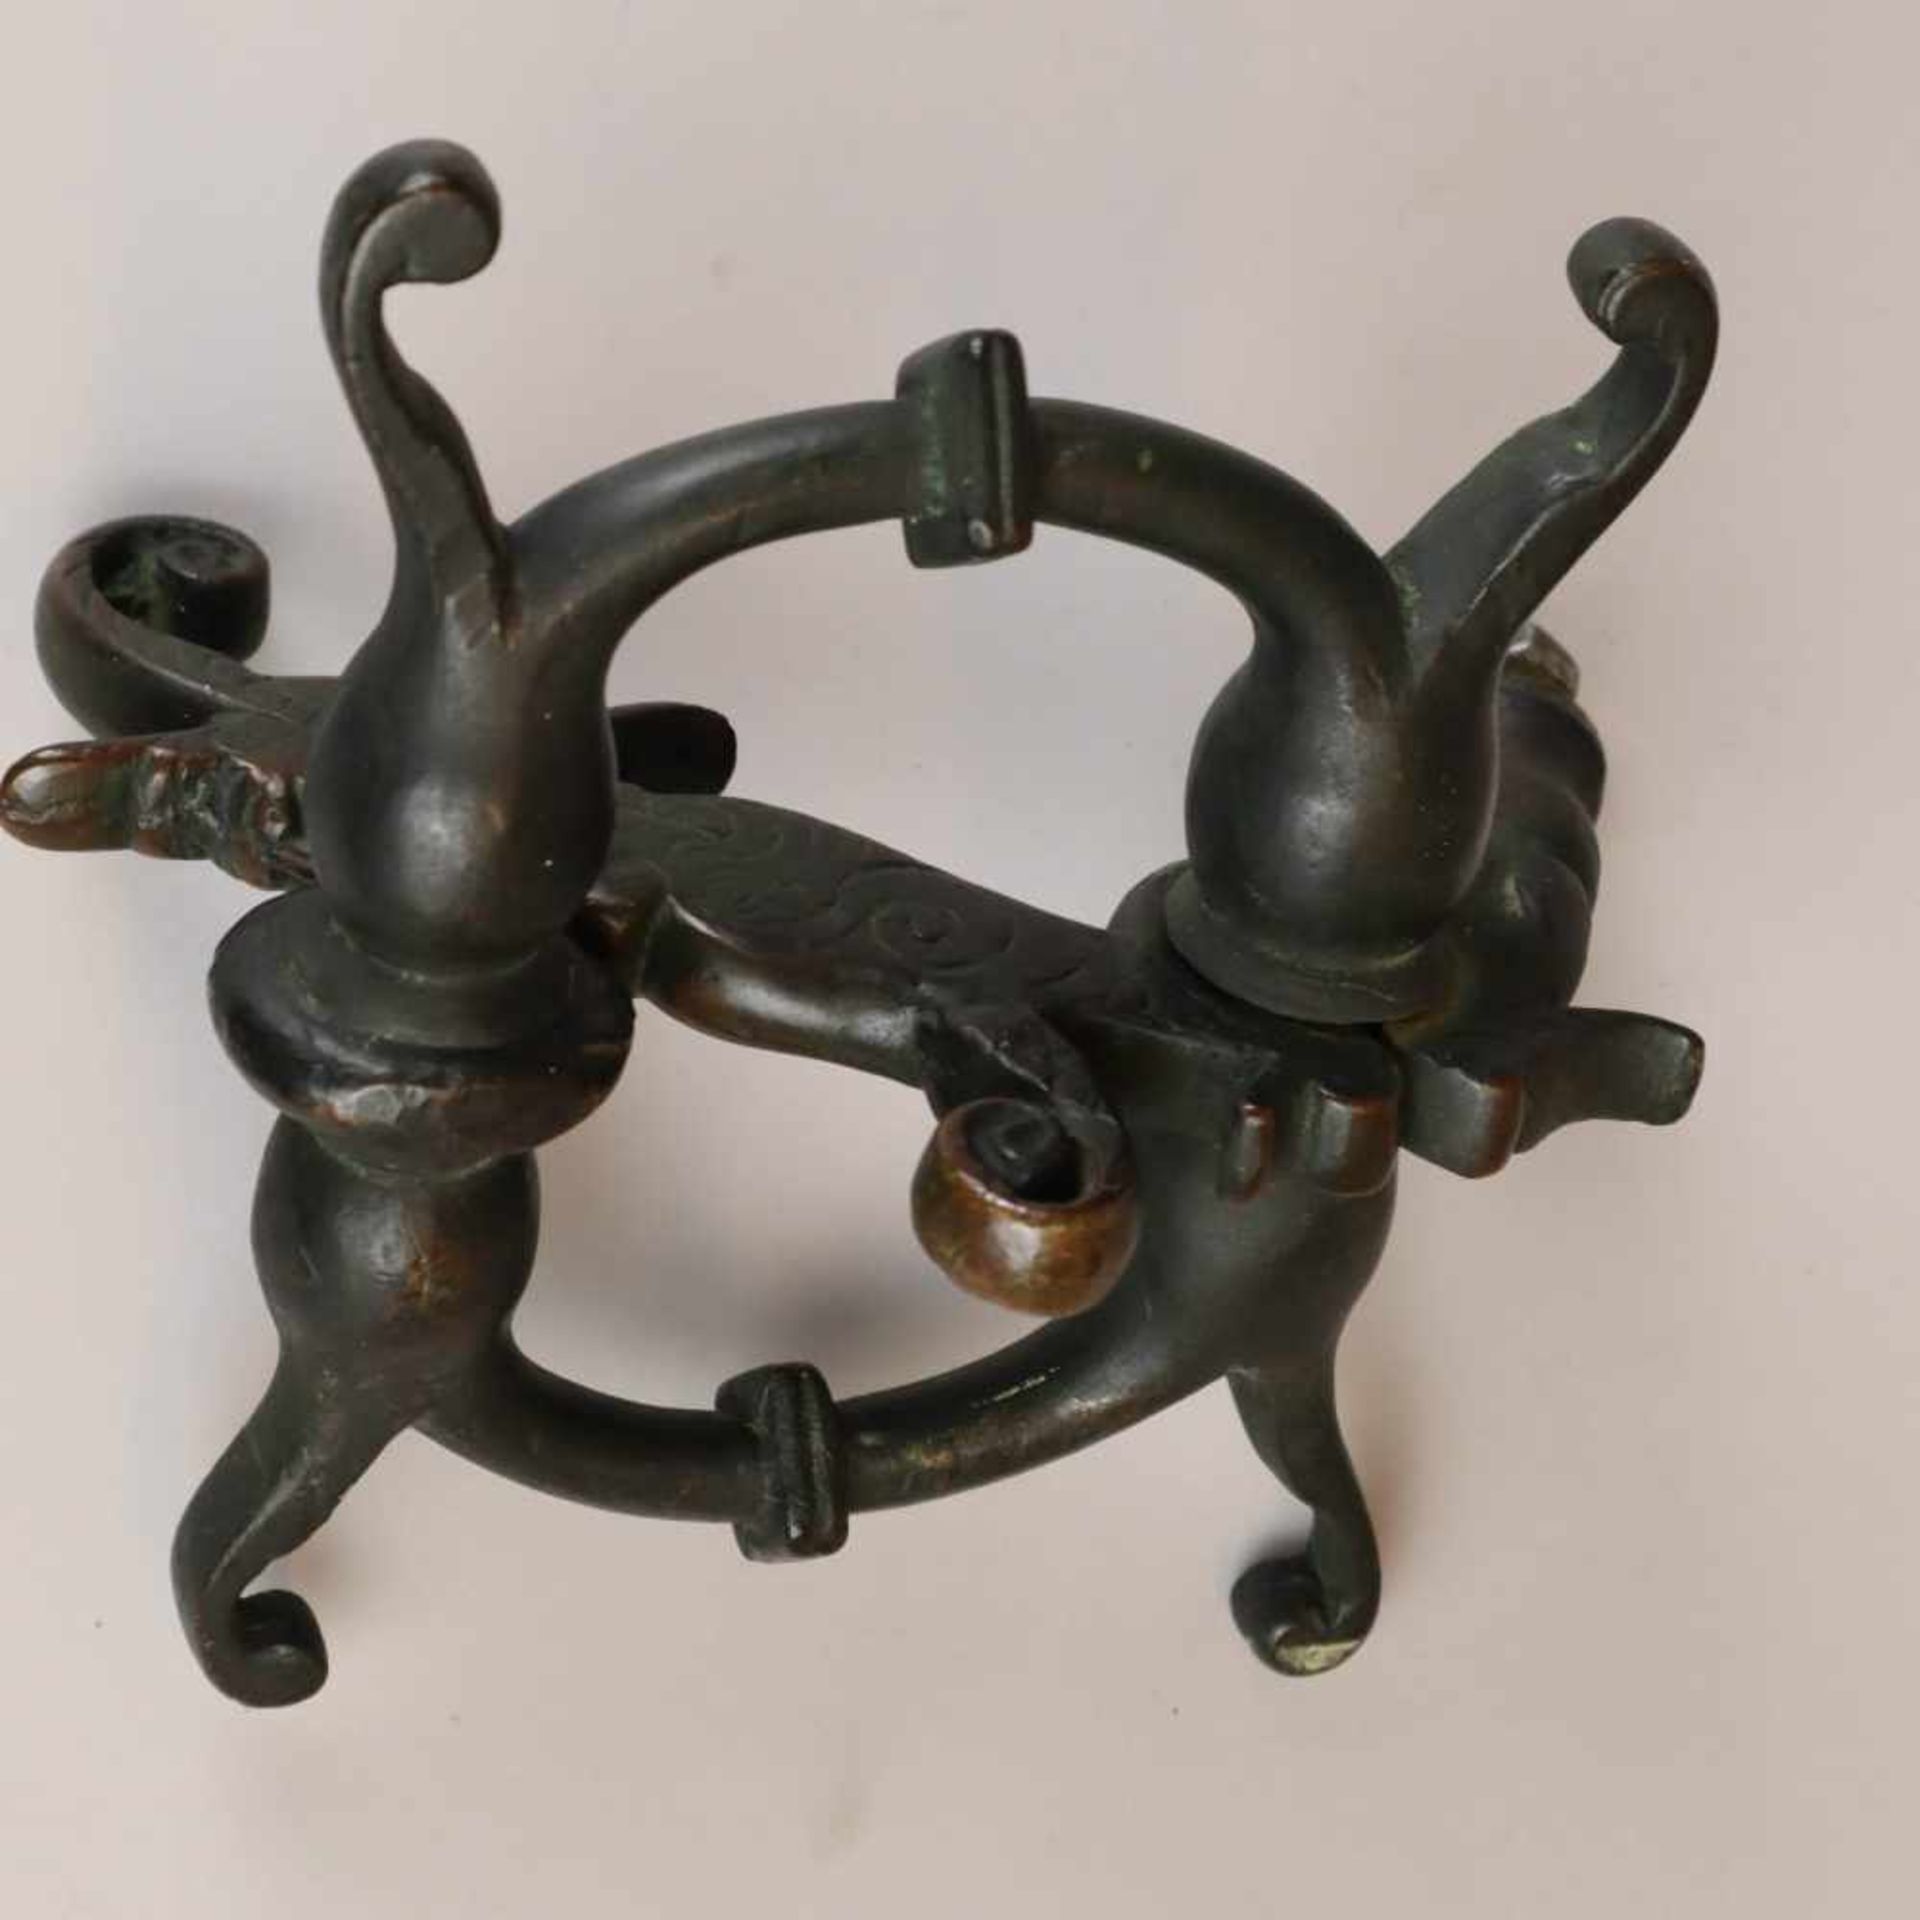 Türklopfer - Bronze, gegossen, dunkel patiniert, Dekor mit antropomorpher Figur und Voluten, - Bild 5 aus 6